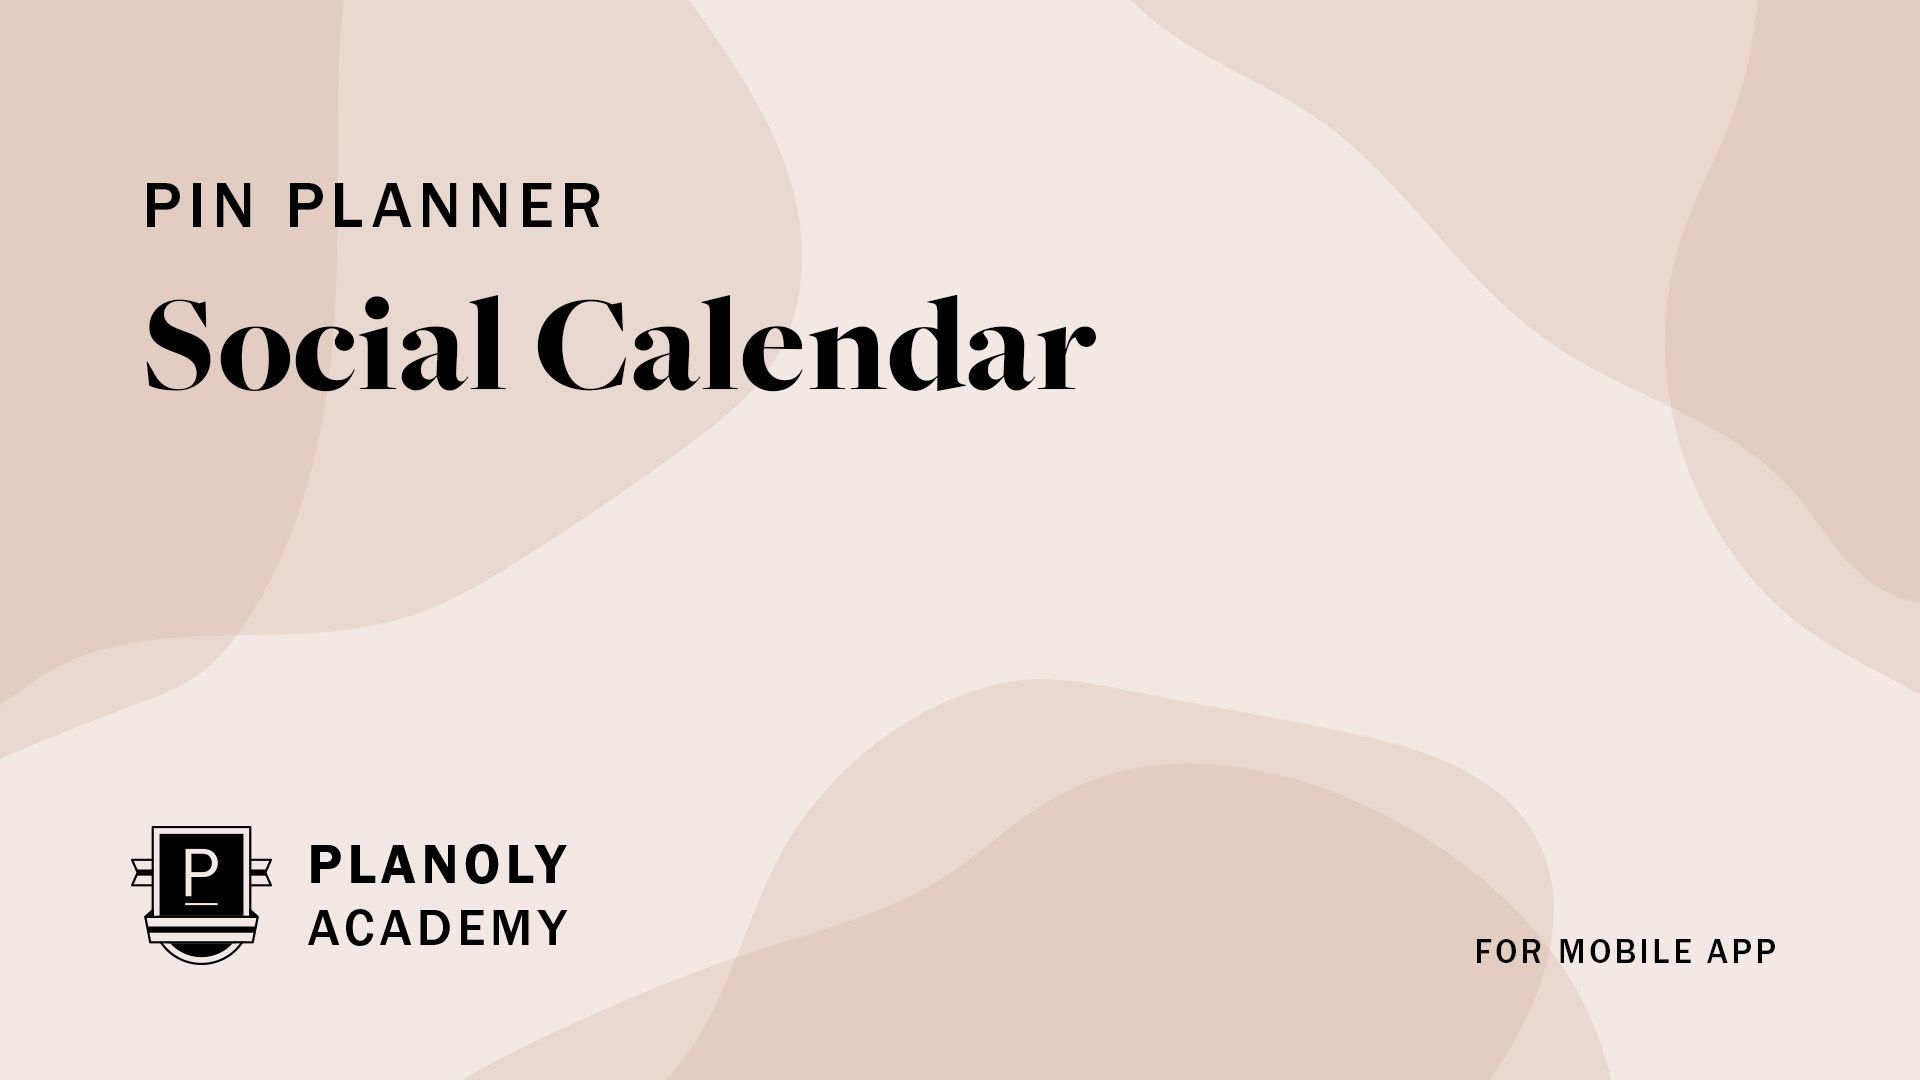 Social Calendar